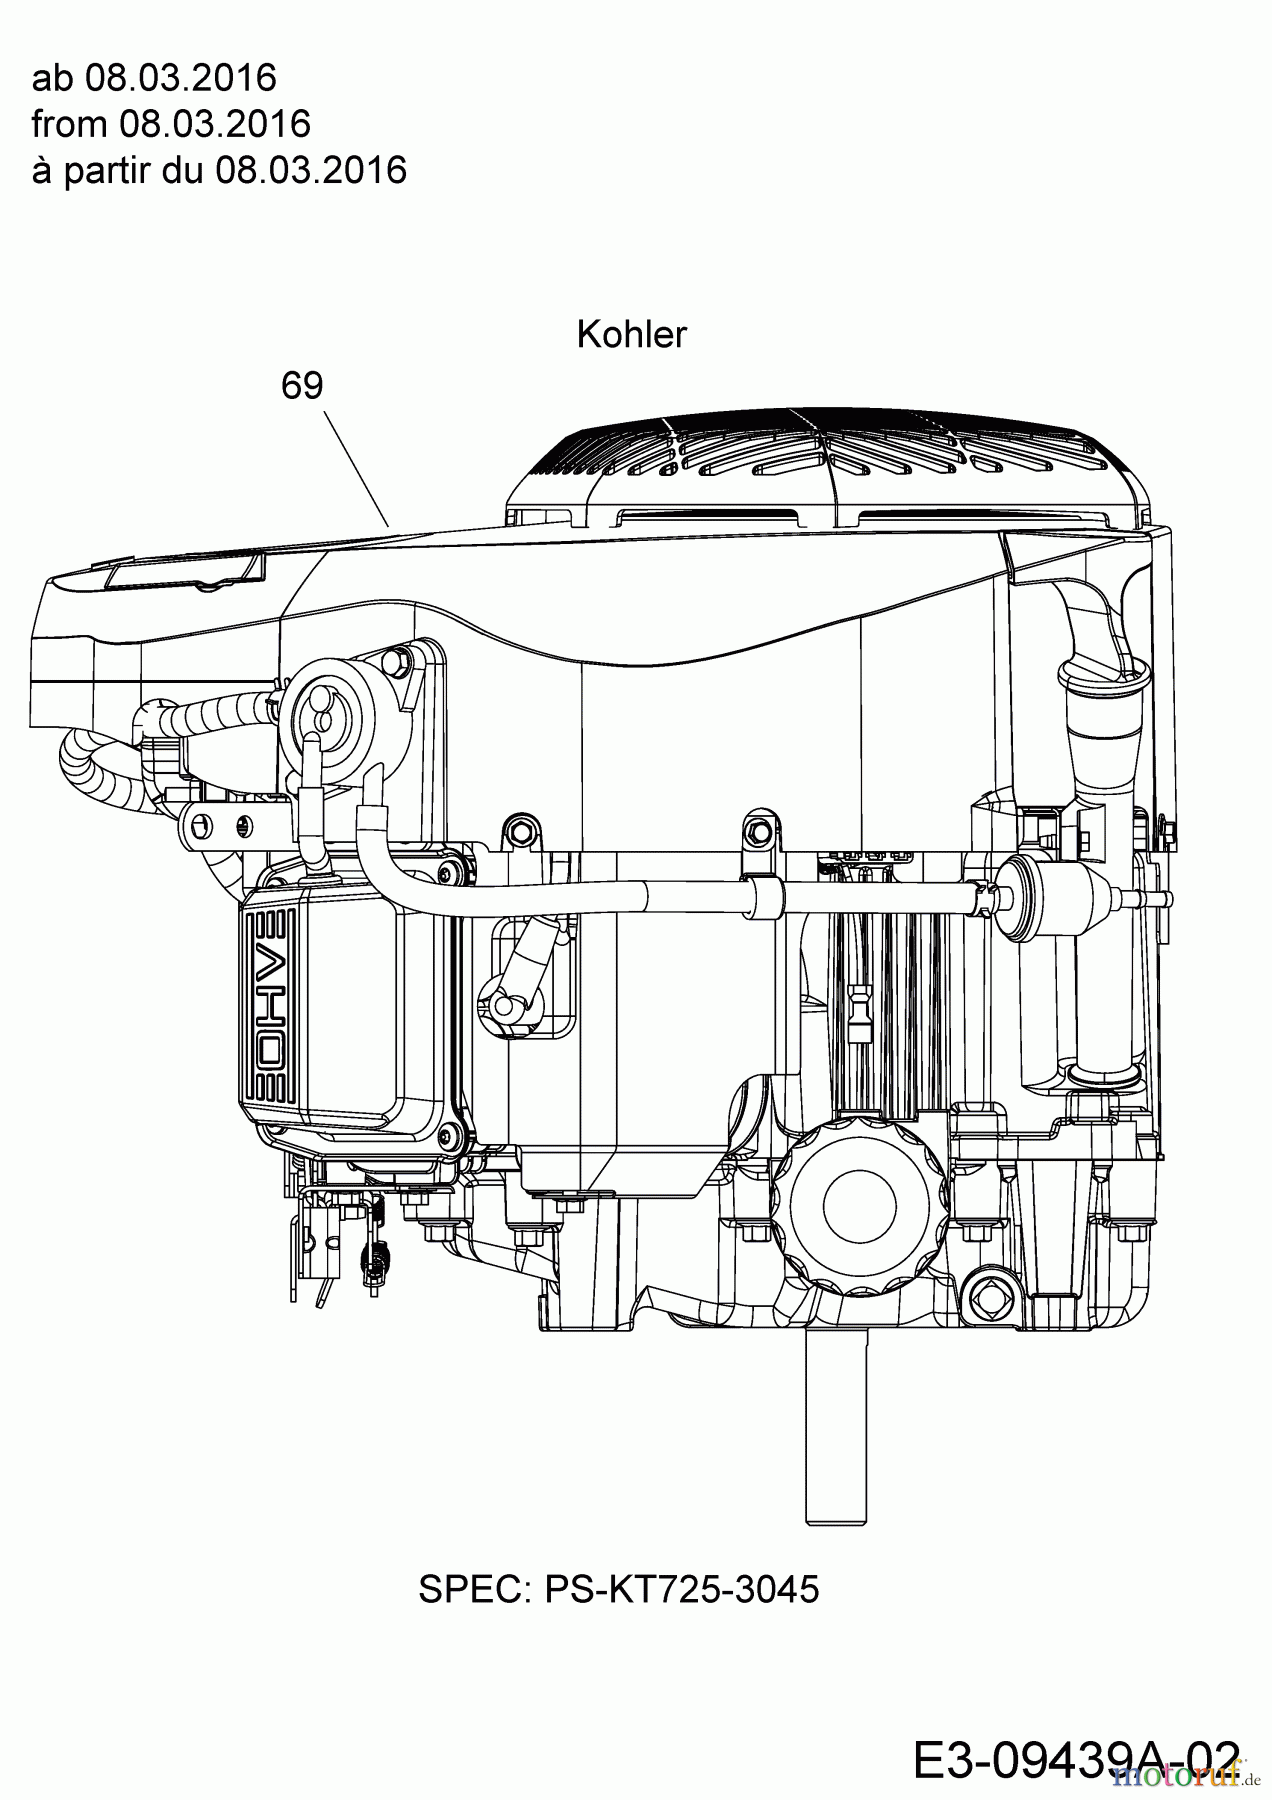  Massey Ferguson Rasentraktoren MF 41-22 RD 13HP91GN395  (2016) Motor Kohler ab 08.03.2016